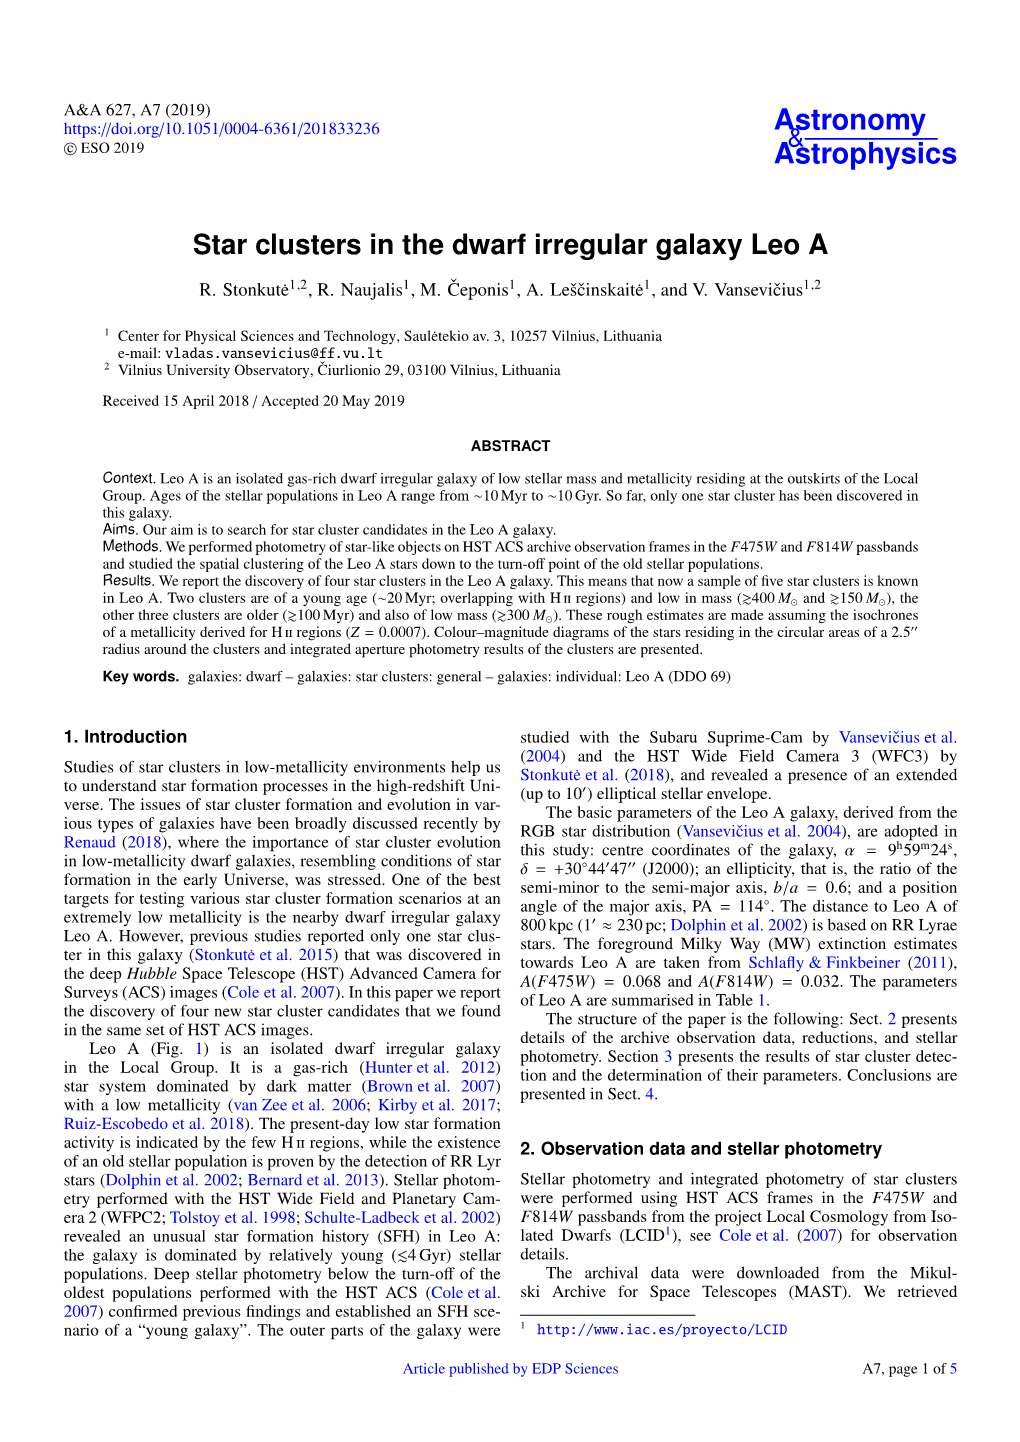 Star Clusters in the Dwarf Irregular Galaxy Leo A